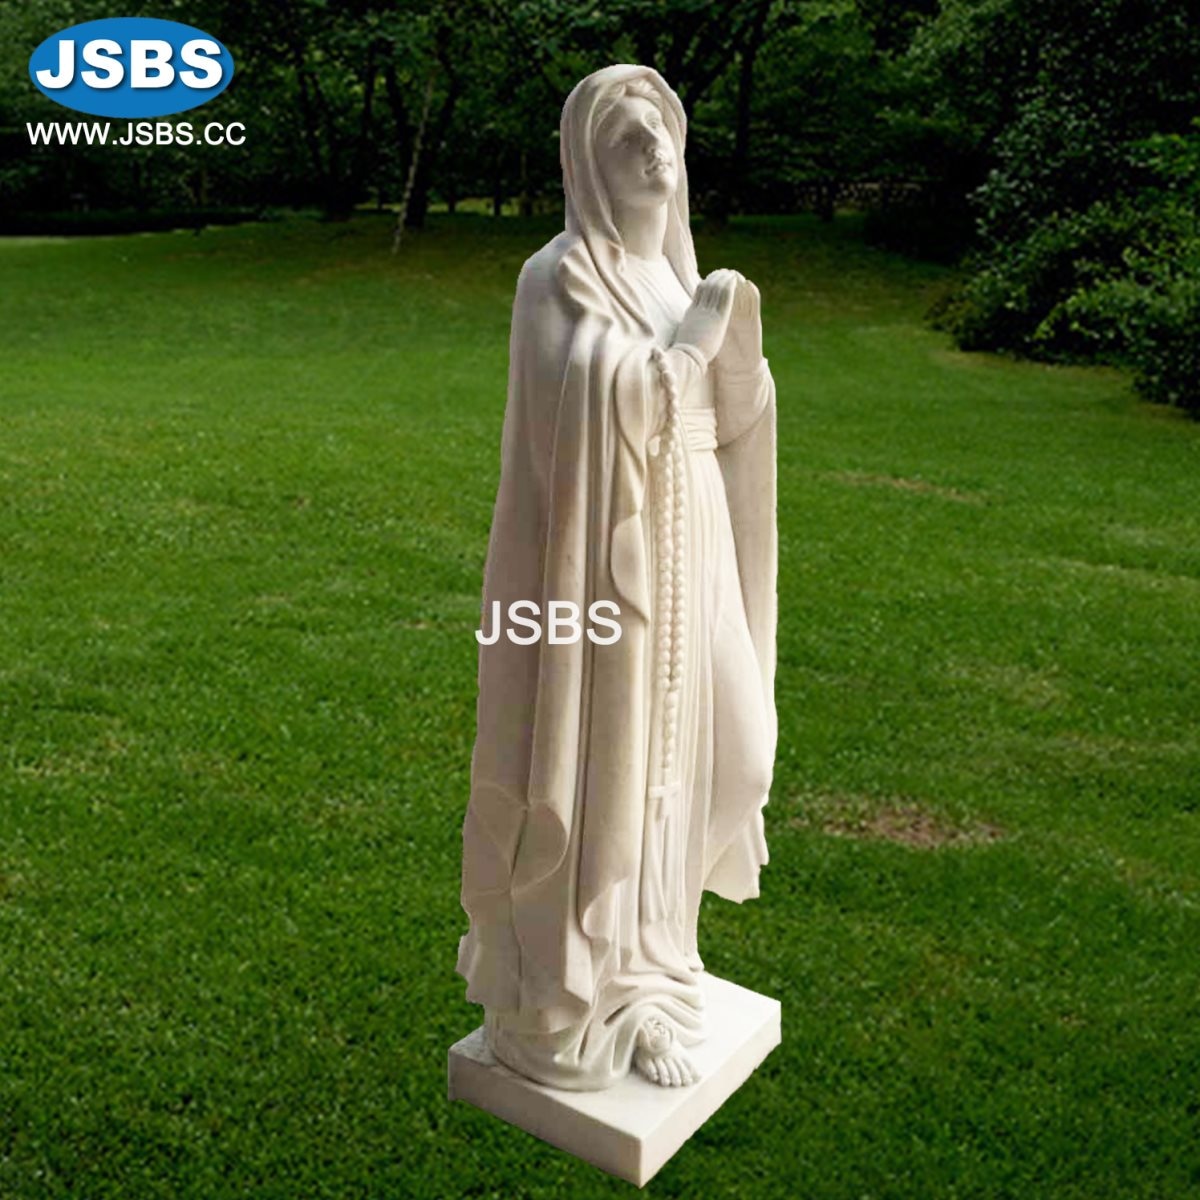 White Marble Virgin Mary Religious Sculpture
jsbluesea.com
info@jsbluesea.com
whatsapp|wechat:0086-13633118189
#marysculpture #religioussculpture #mary  #virginmary #mary #marystatue #religiousstatue  #jsbsmarble #jsbsstone #JSBS